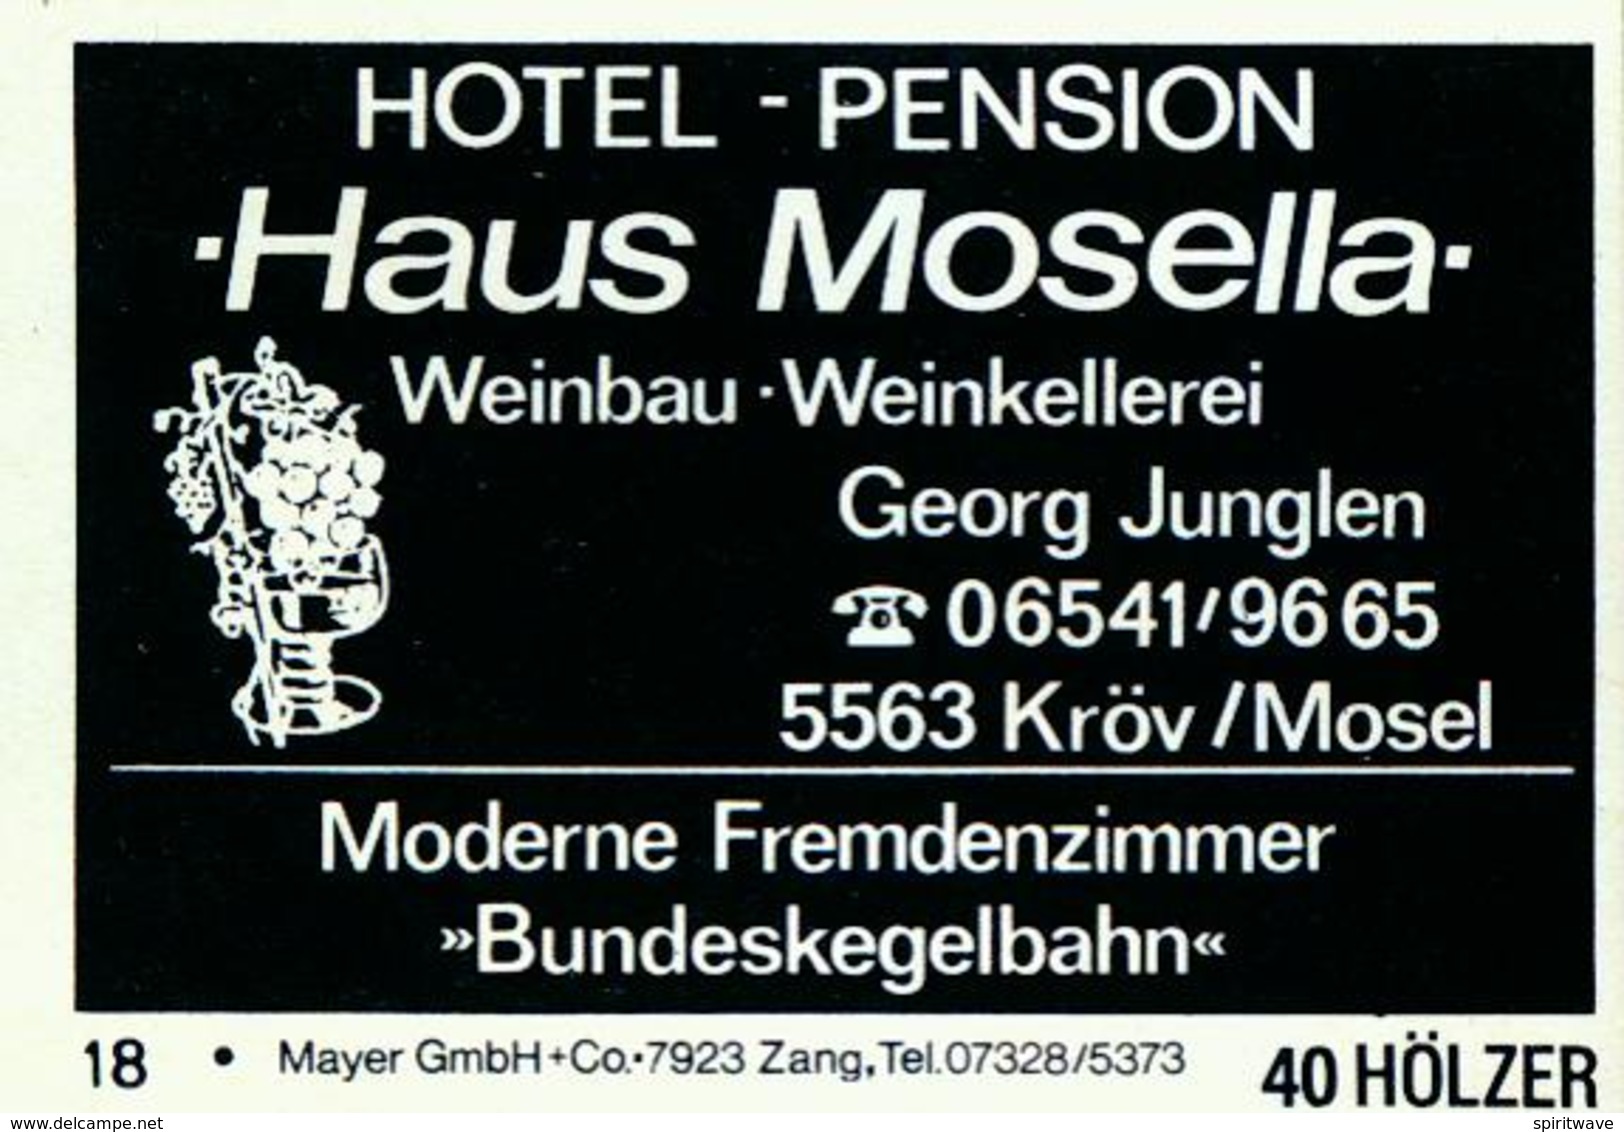 20 Alte Gasthausetiketten, Haus Mosella Hotel – Pension Weinbau Weinkellerei, Georg Junglen, 5563 Kröv/Mosel #207 - Matchbox Labels